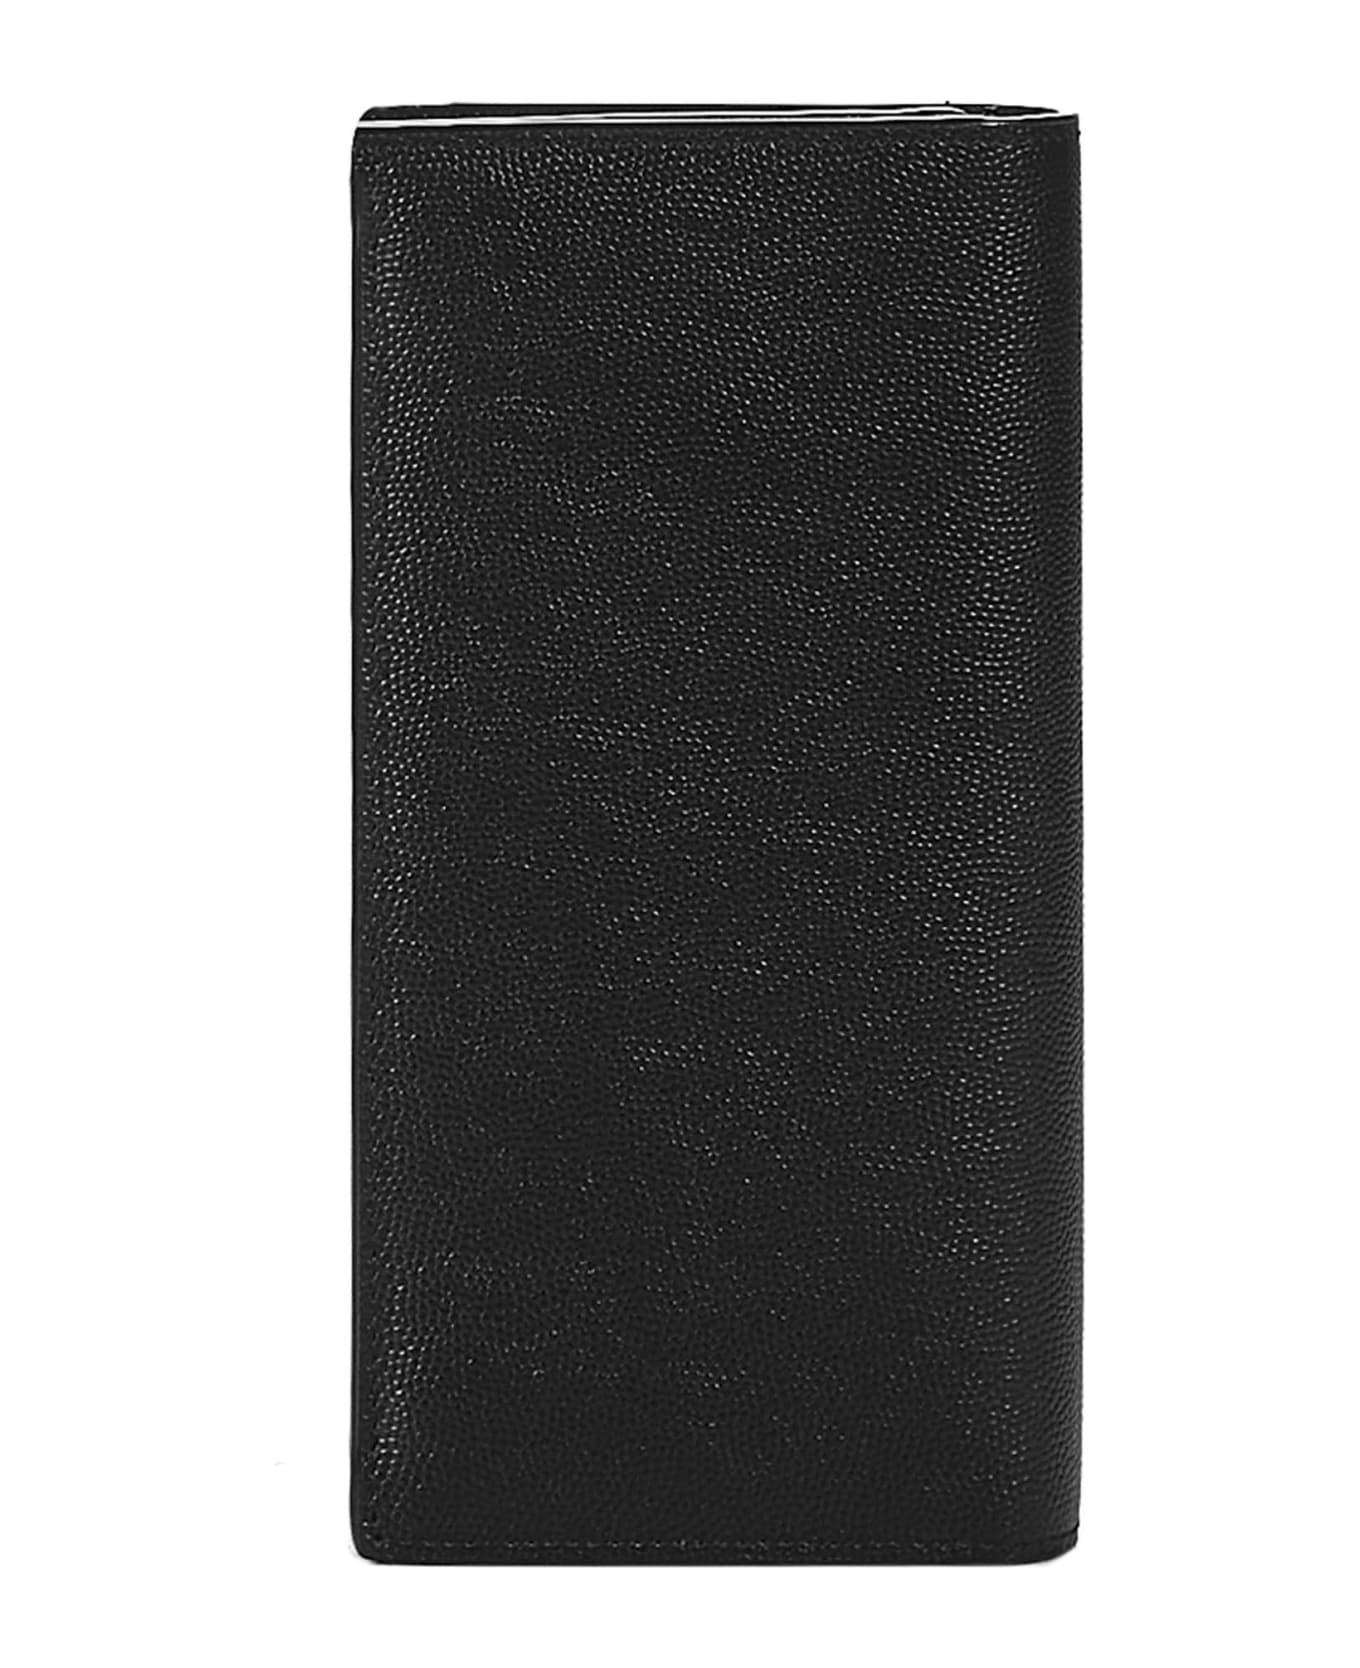 Saint Laurent Monogram Wallet In Grain De Poudre Leather - Black